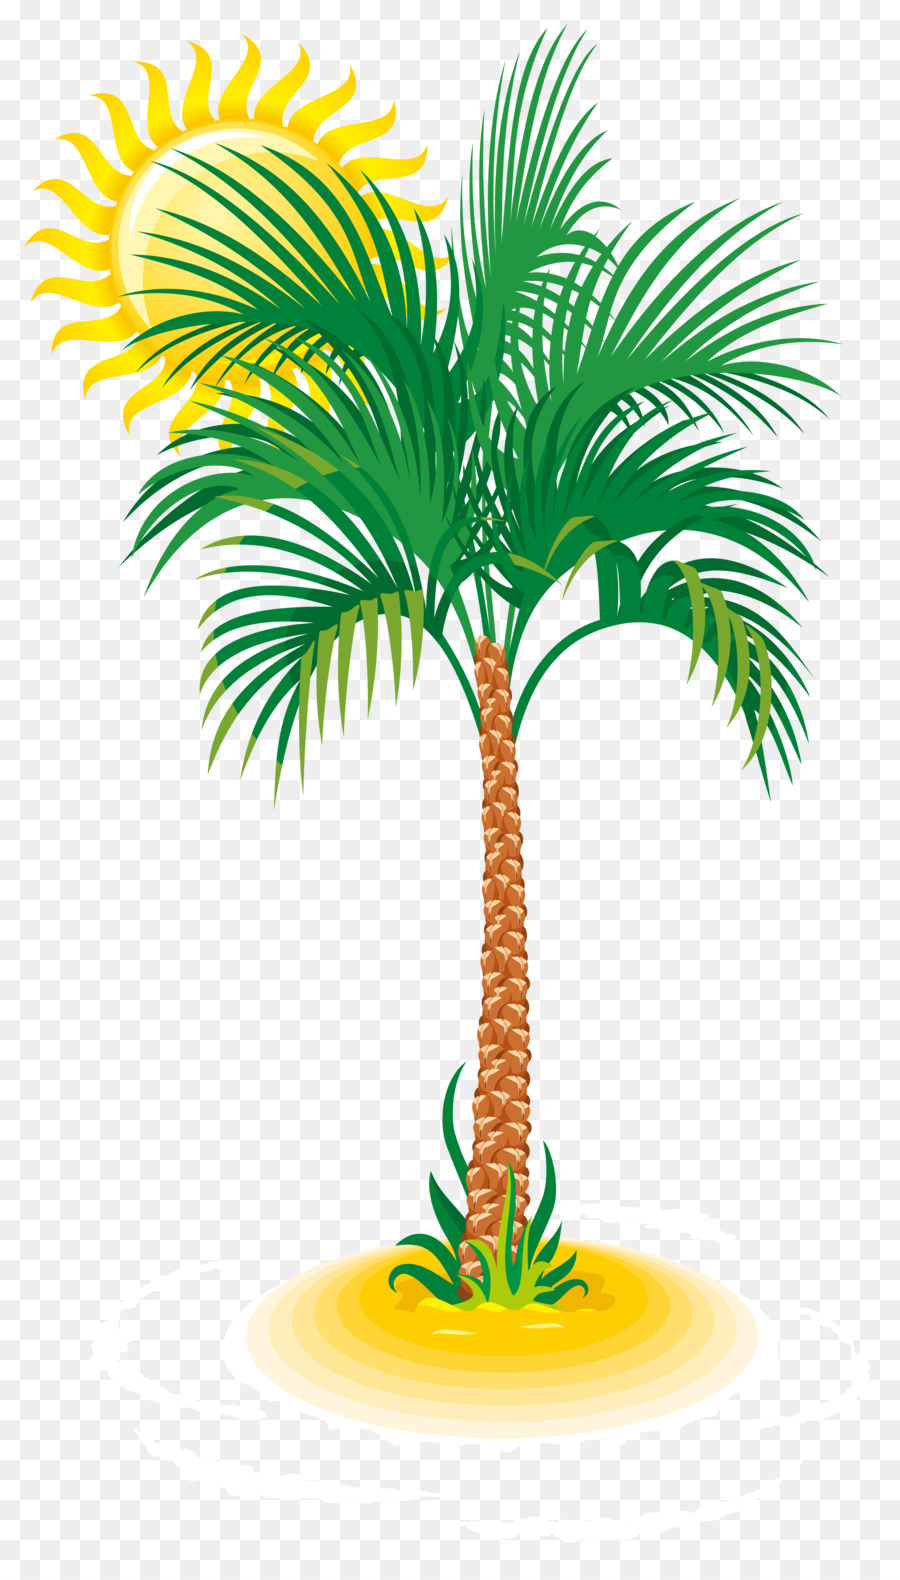 Coconut Tree Cartoon